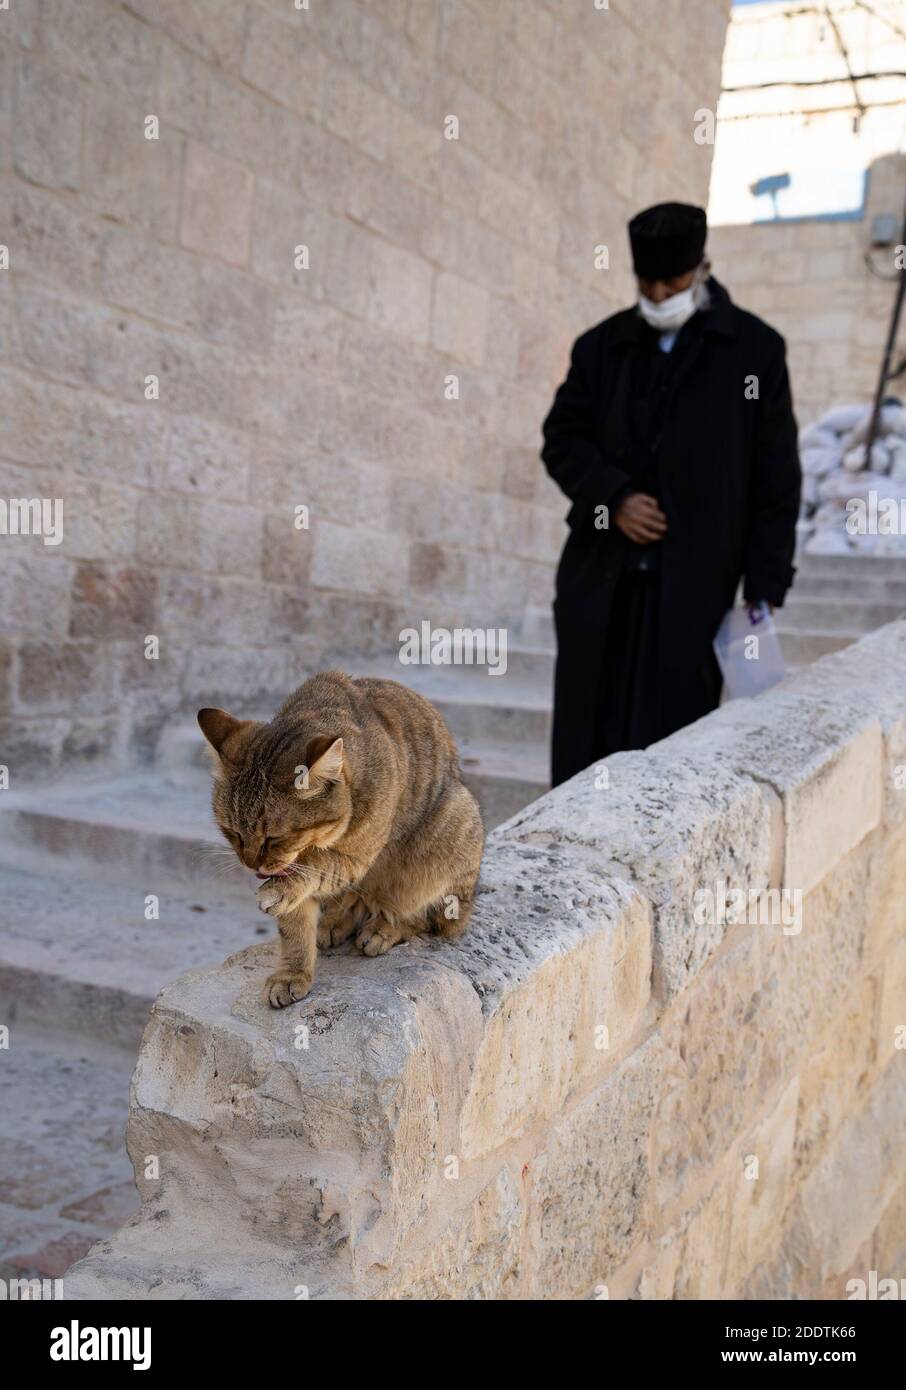 Jerusalén, Israel - 21 de noviembre de 2020: Un gato callejera lamiendo su  pata en una valla de piedra, mientras un monje pasa por la ciudad vieja de  Jerusalén, Israel Fotografía de stock - Alamy